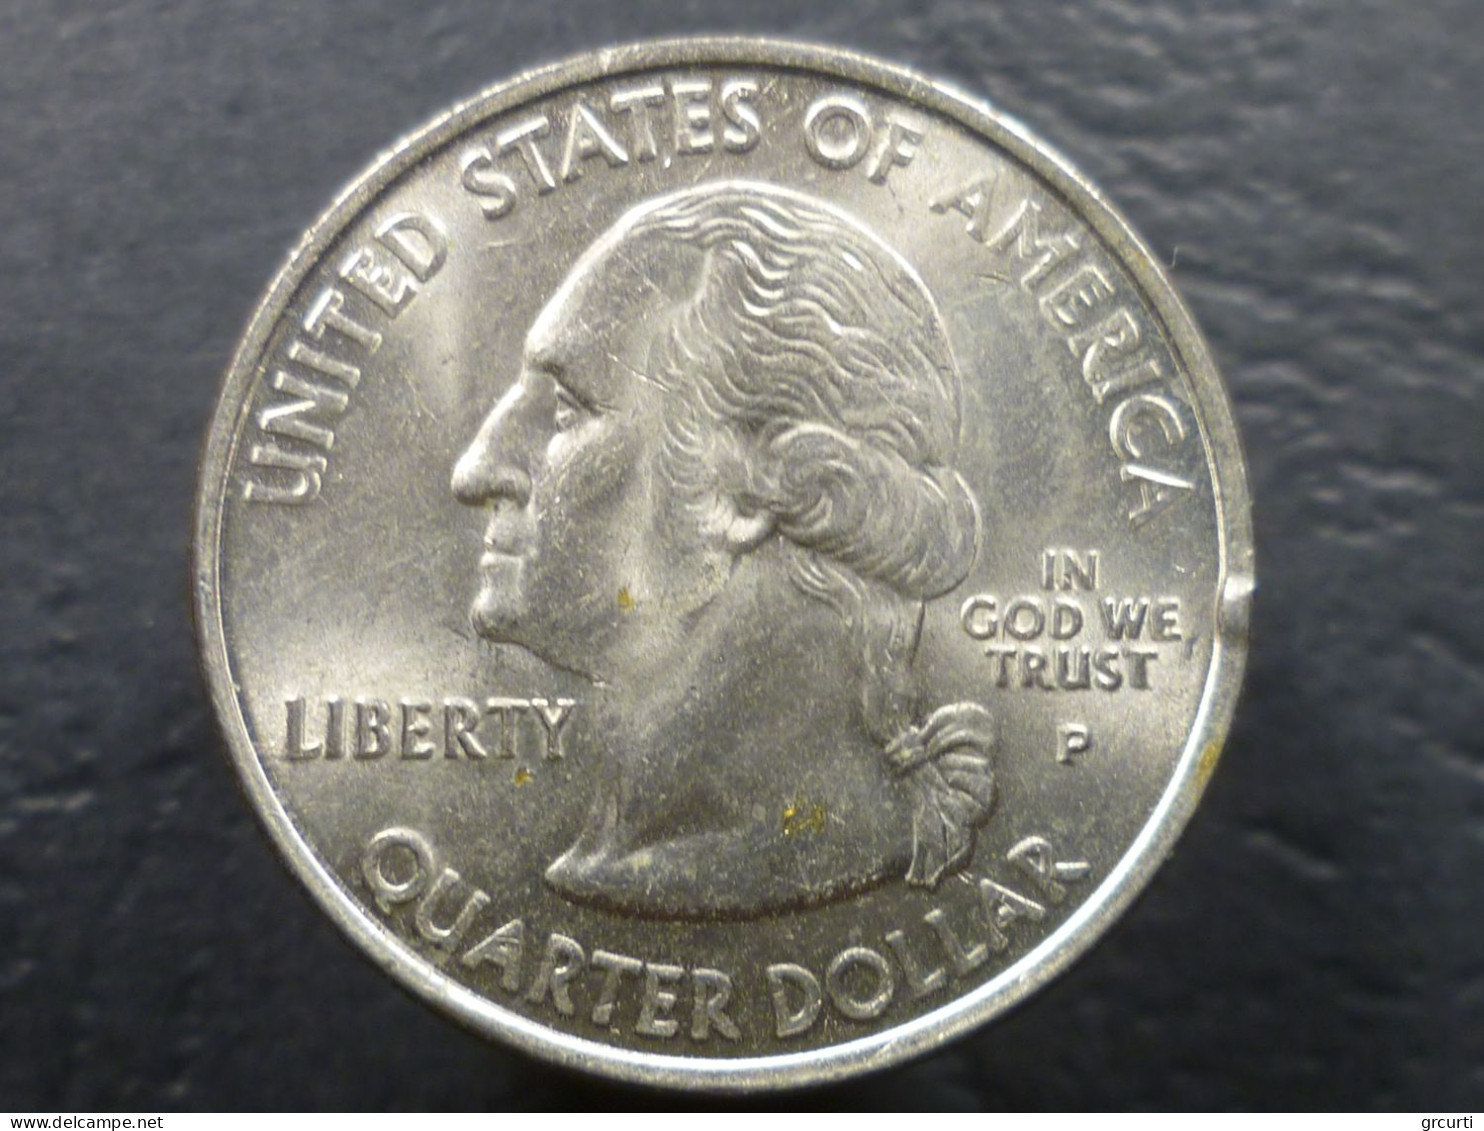 Stati Uniti - 25 Cents 2000-2001 - Lotto di 7 monete colorate